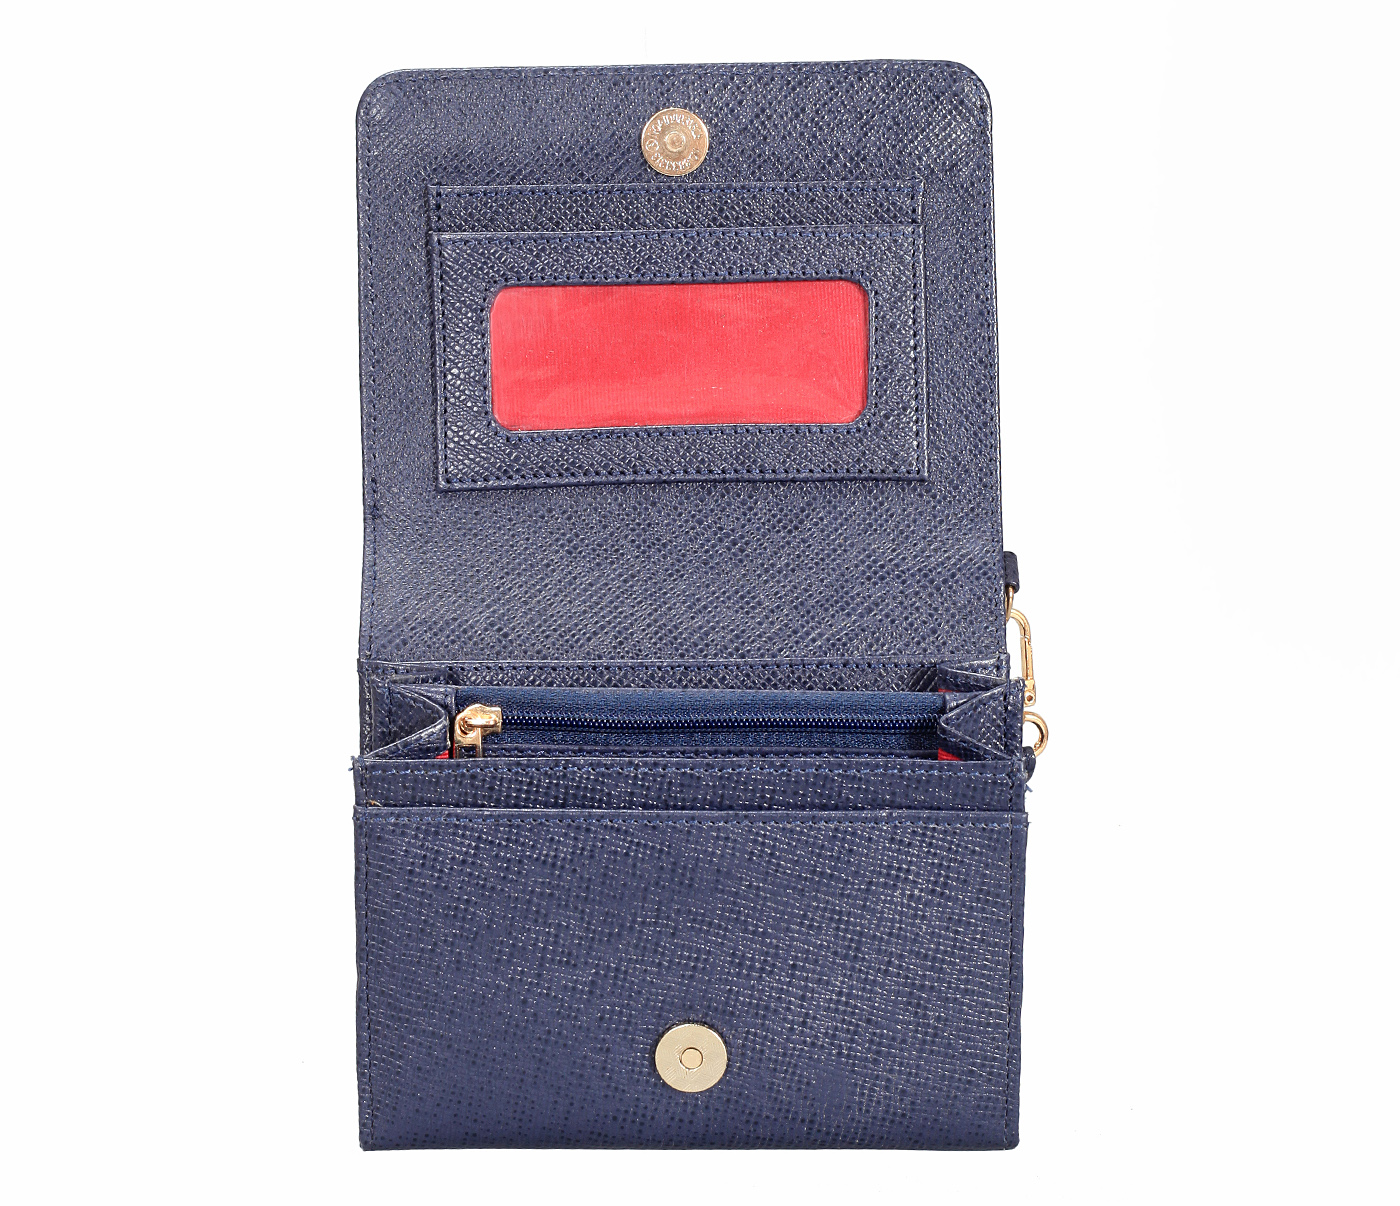 W330-Fiorella-Women's wallet in Genuine Leather - Blue